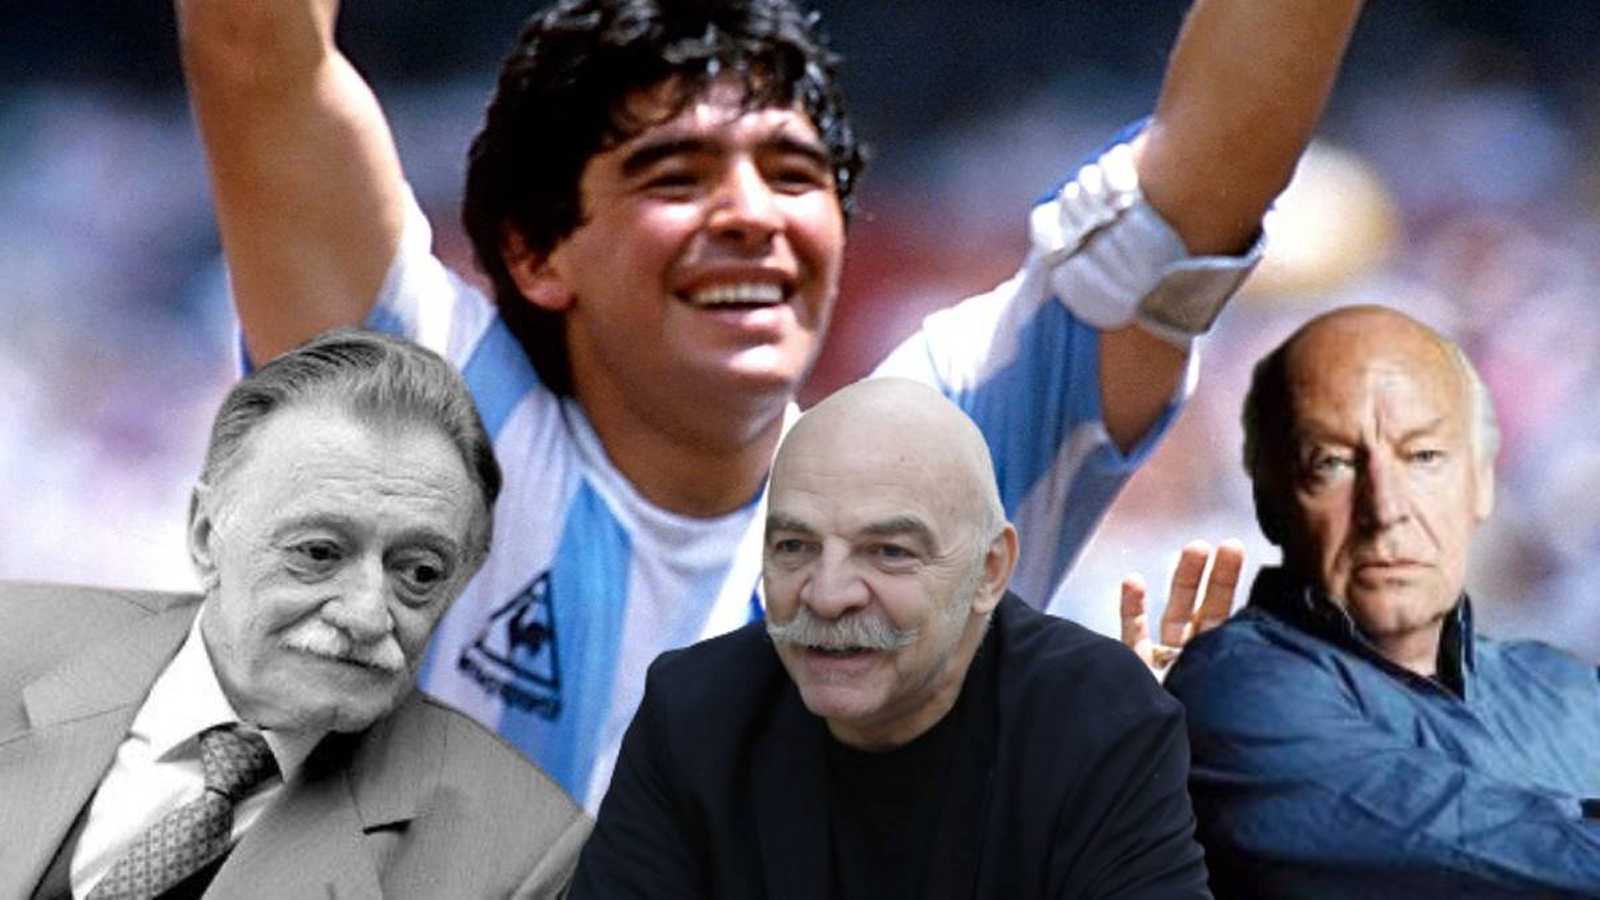 Mario Benedetti, Martín Caparrós, y Eduardo Galeano admiraron y criticaron a Diego Armando Maradona.